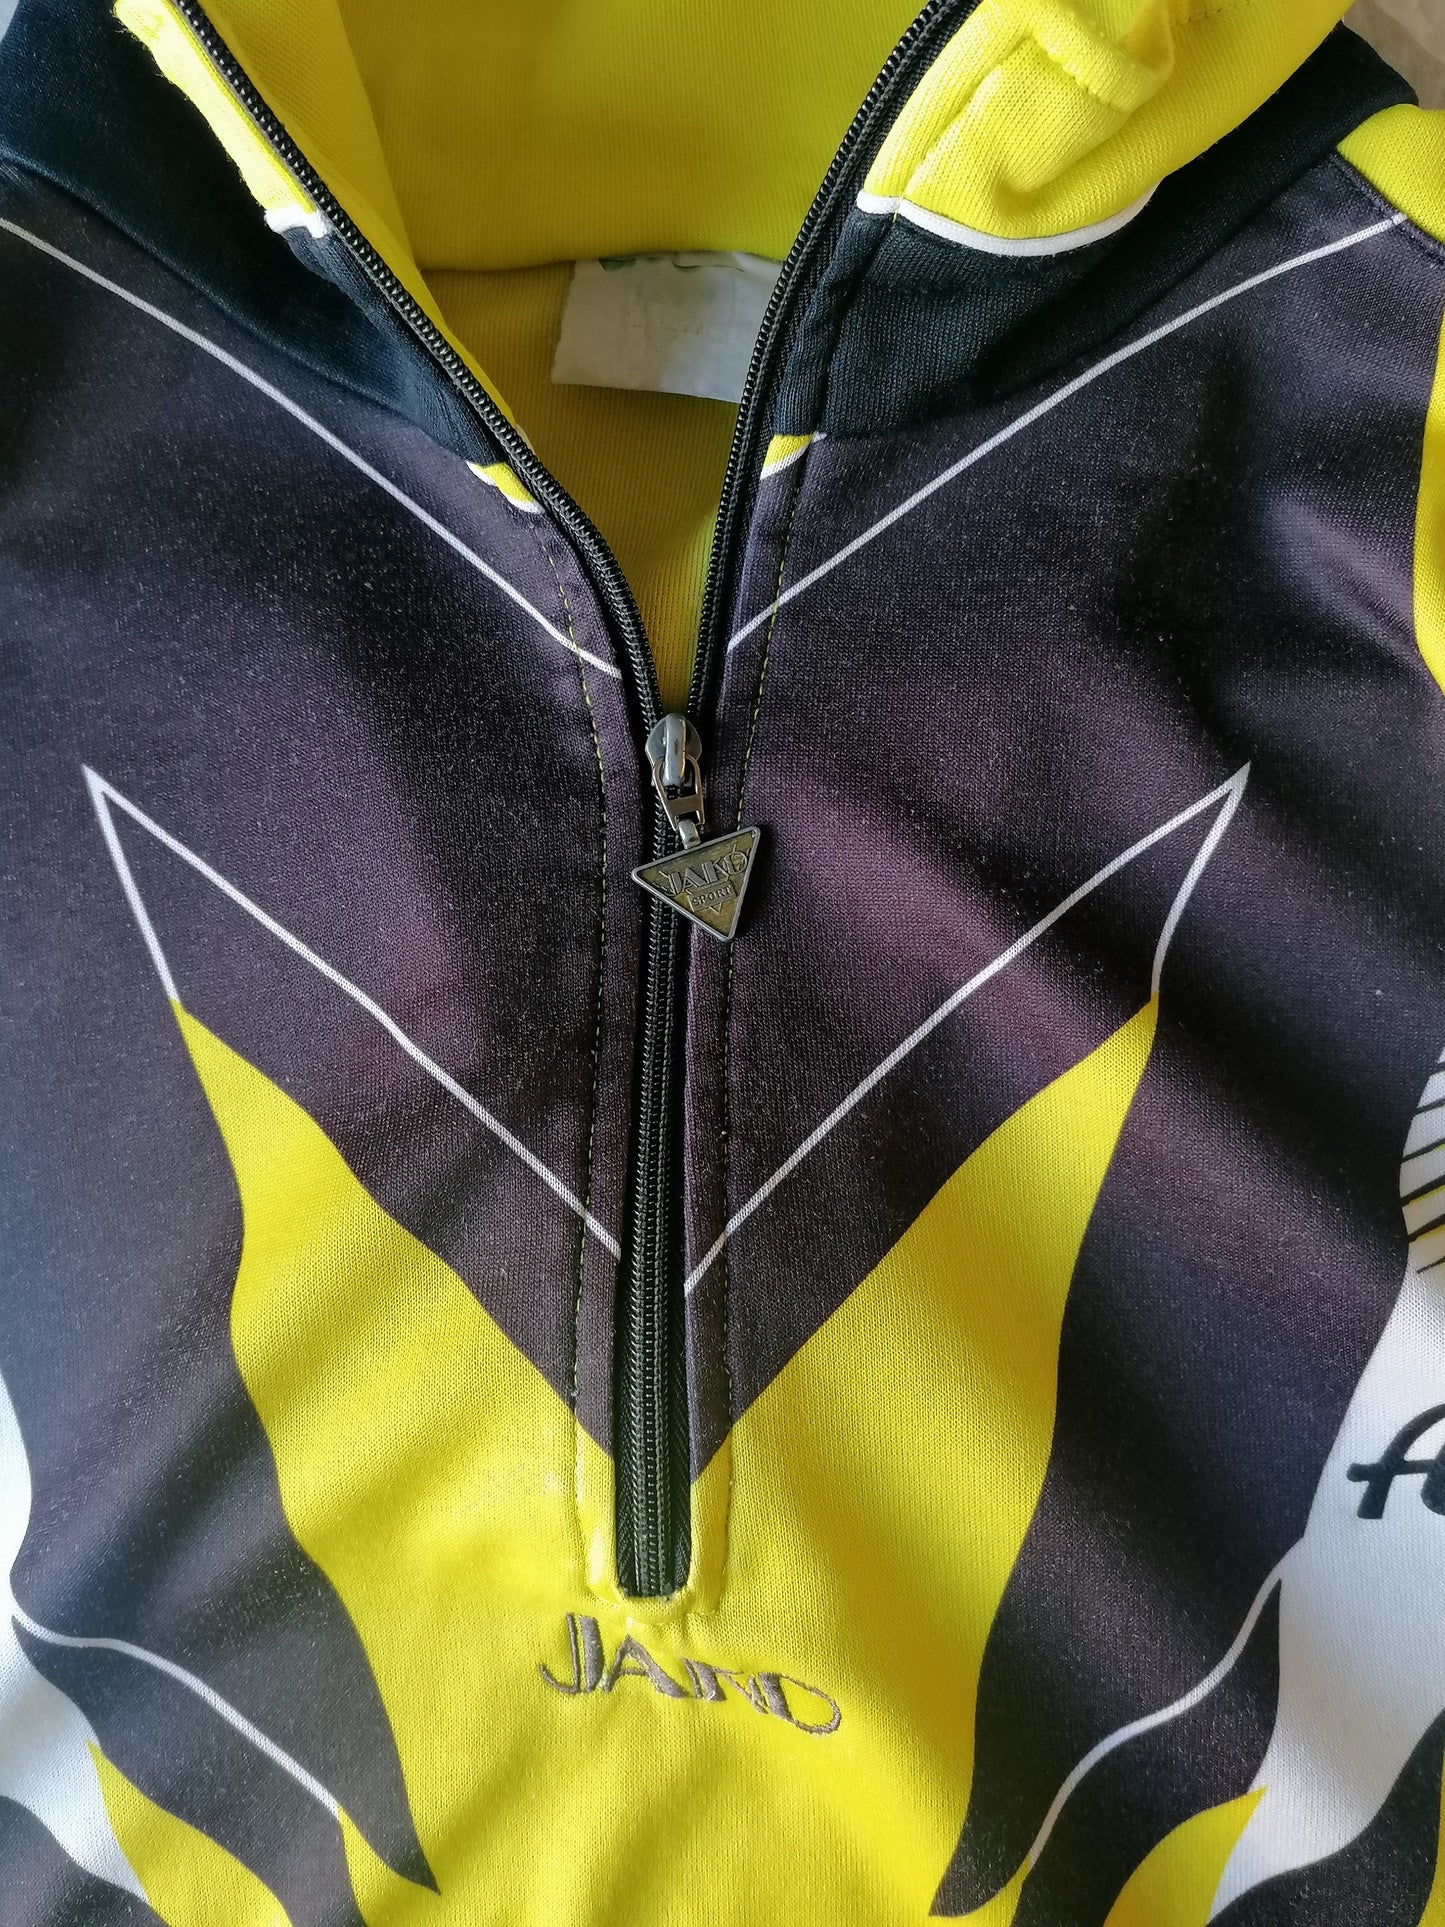 Vintage Jacko 80's-90's Sport trui met rits. Geel Wit Zwart gekleurd. Maat XXL / 2XL.